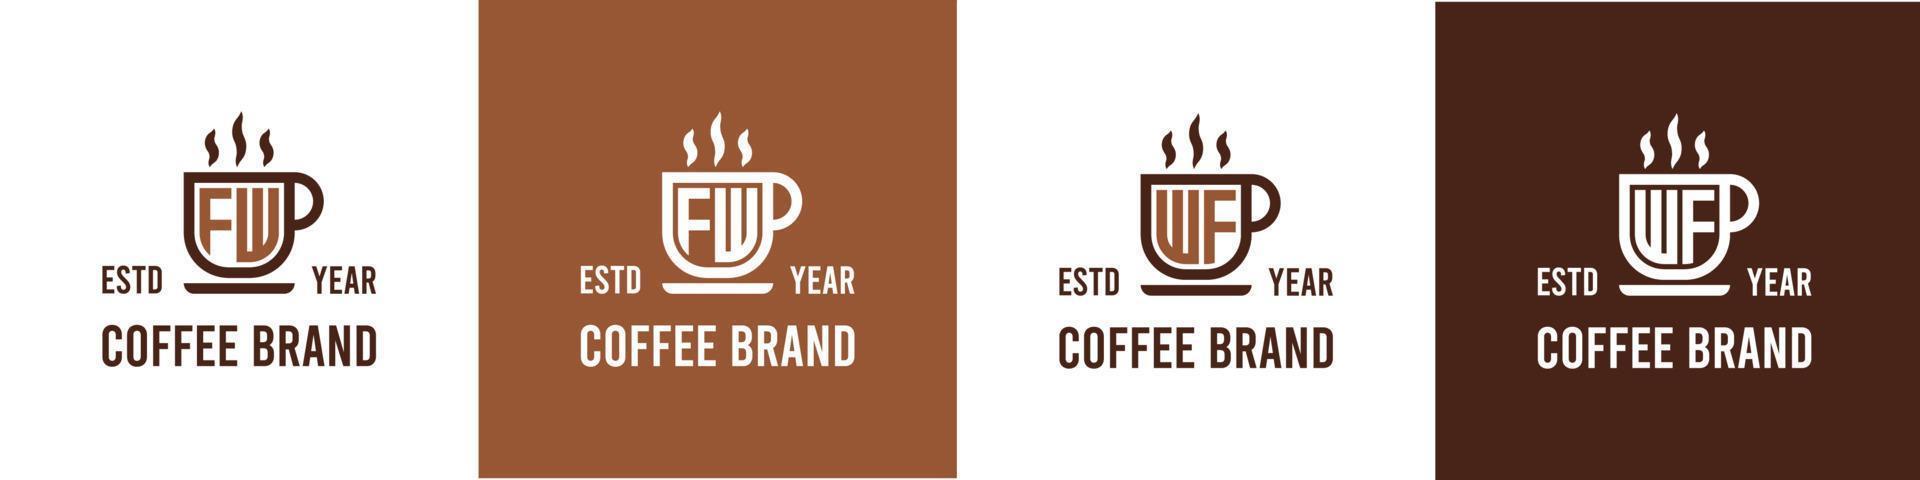 letra fw y wf café logo, adecuado para ninguna negocio relacionado a café, té, o otro con fw o wf iniciales. vector